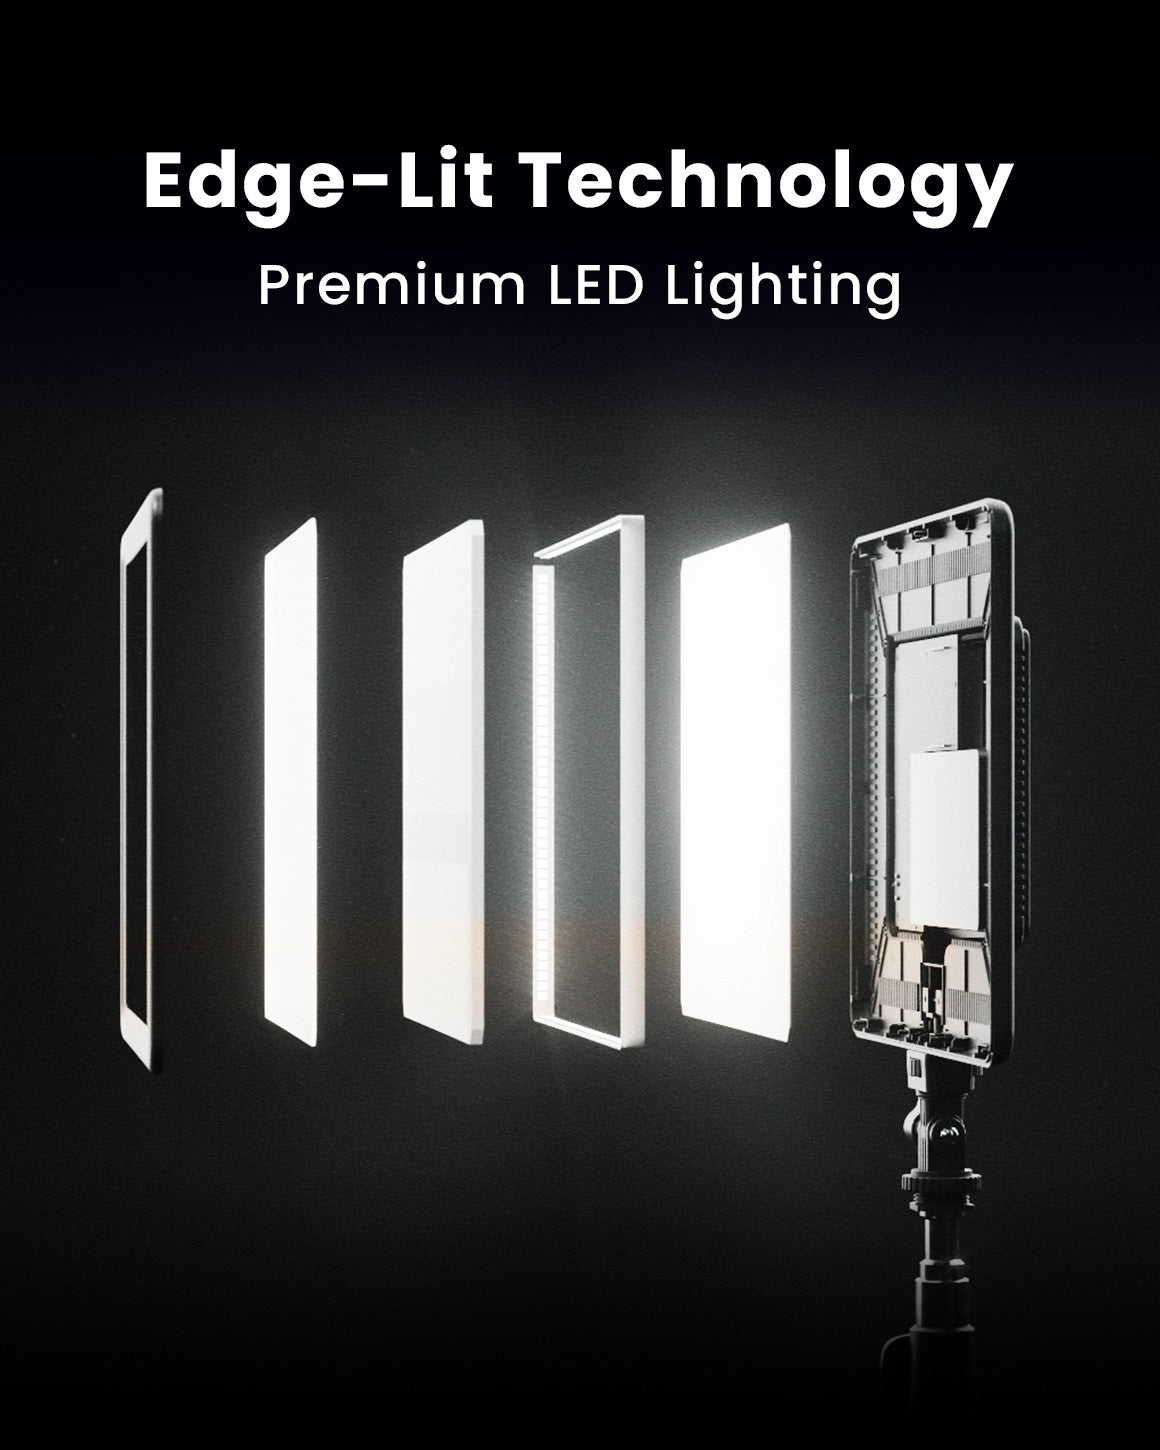 Diagram breakdown of Edge Lit Technology